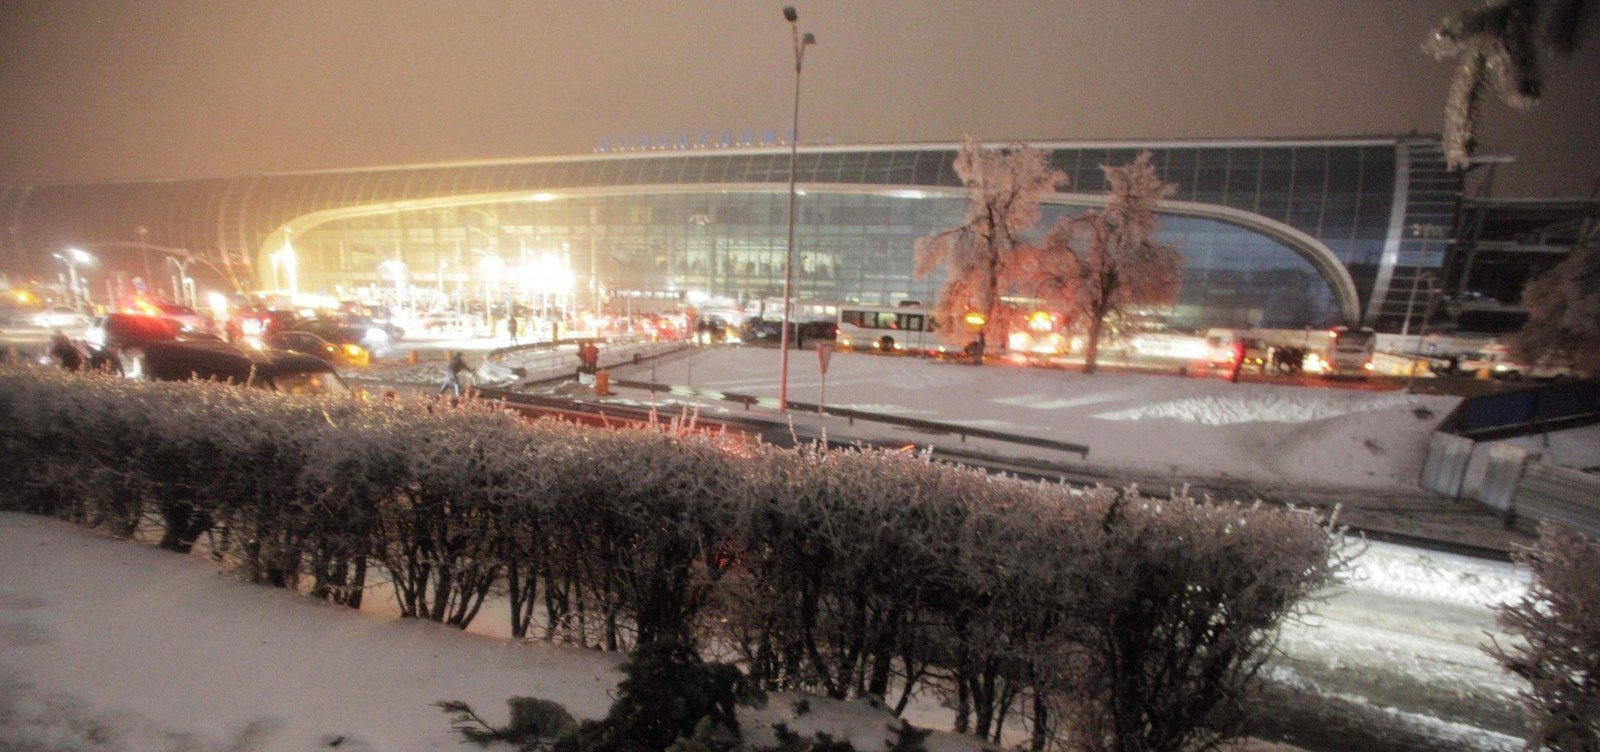 24 января 2011 домодедово. Взрыв в аэропорту Домодедово. Теракт в аэропорту Домодедово 24 января 2011 года.